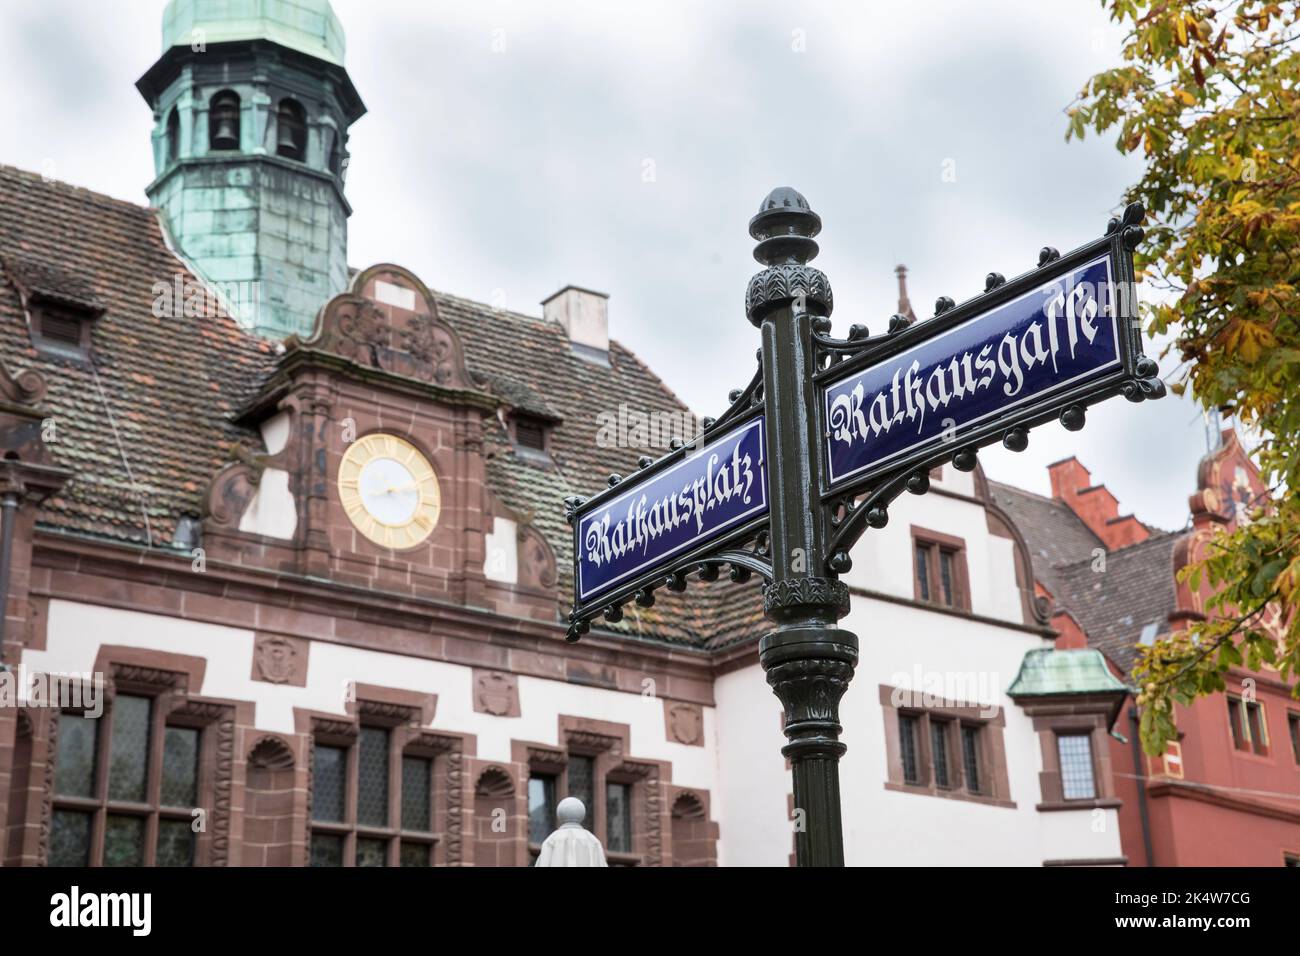 street signs in front of the city hall in the historic town, Freiburg im Breisgau, Baden-Wuerttemberg, Germany. Strassenschilder vor dem Rathaus in de Stock Photo